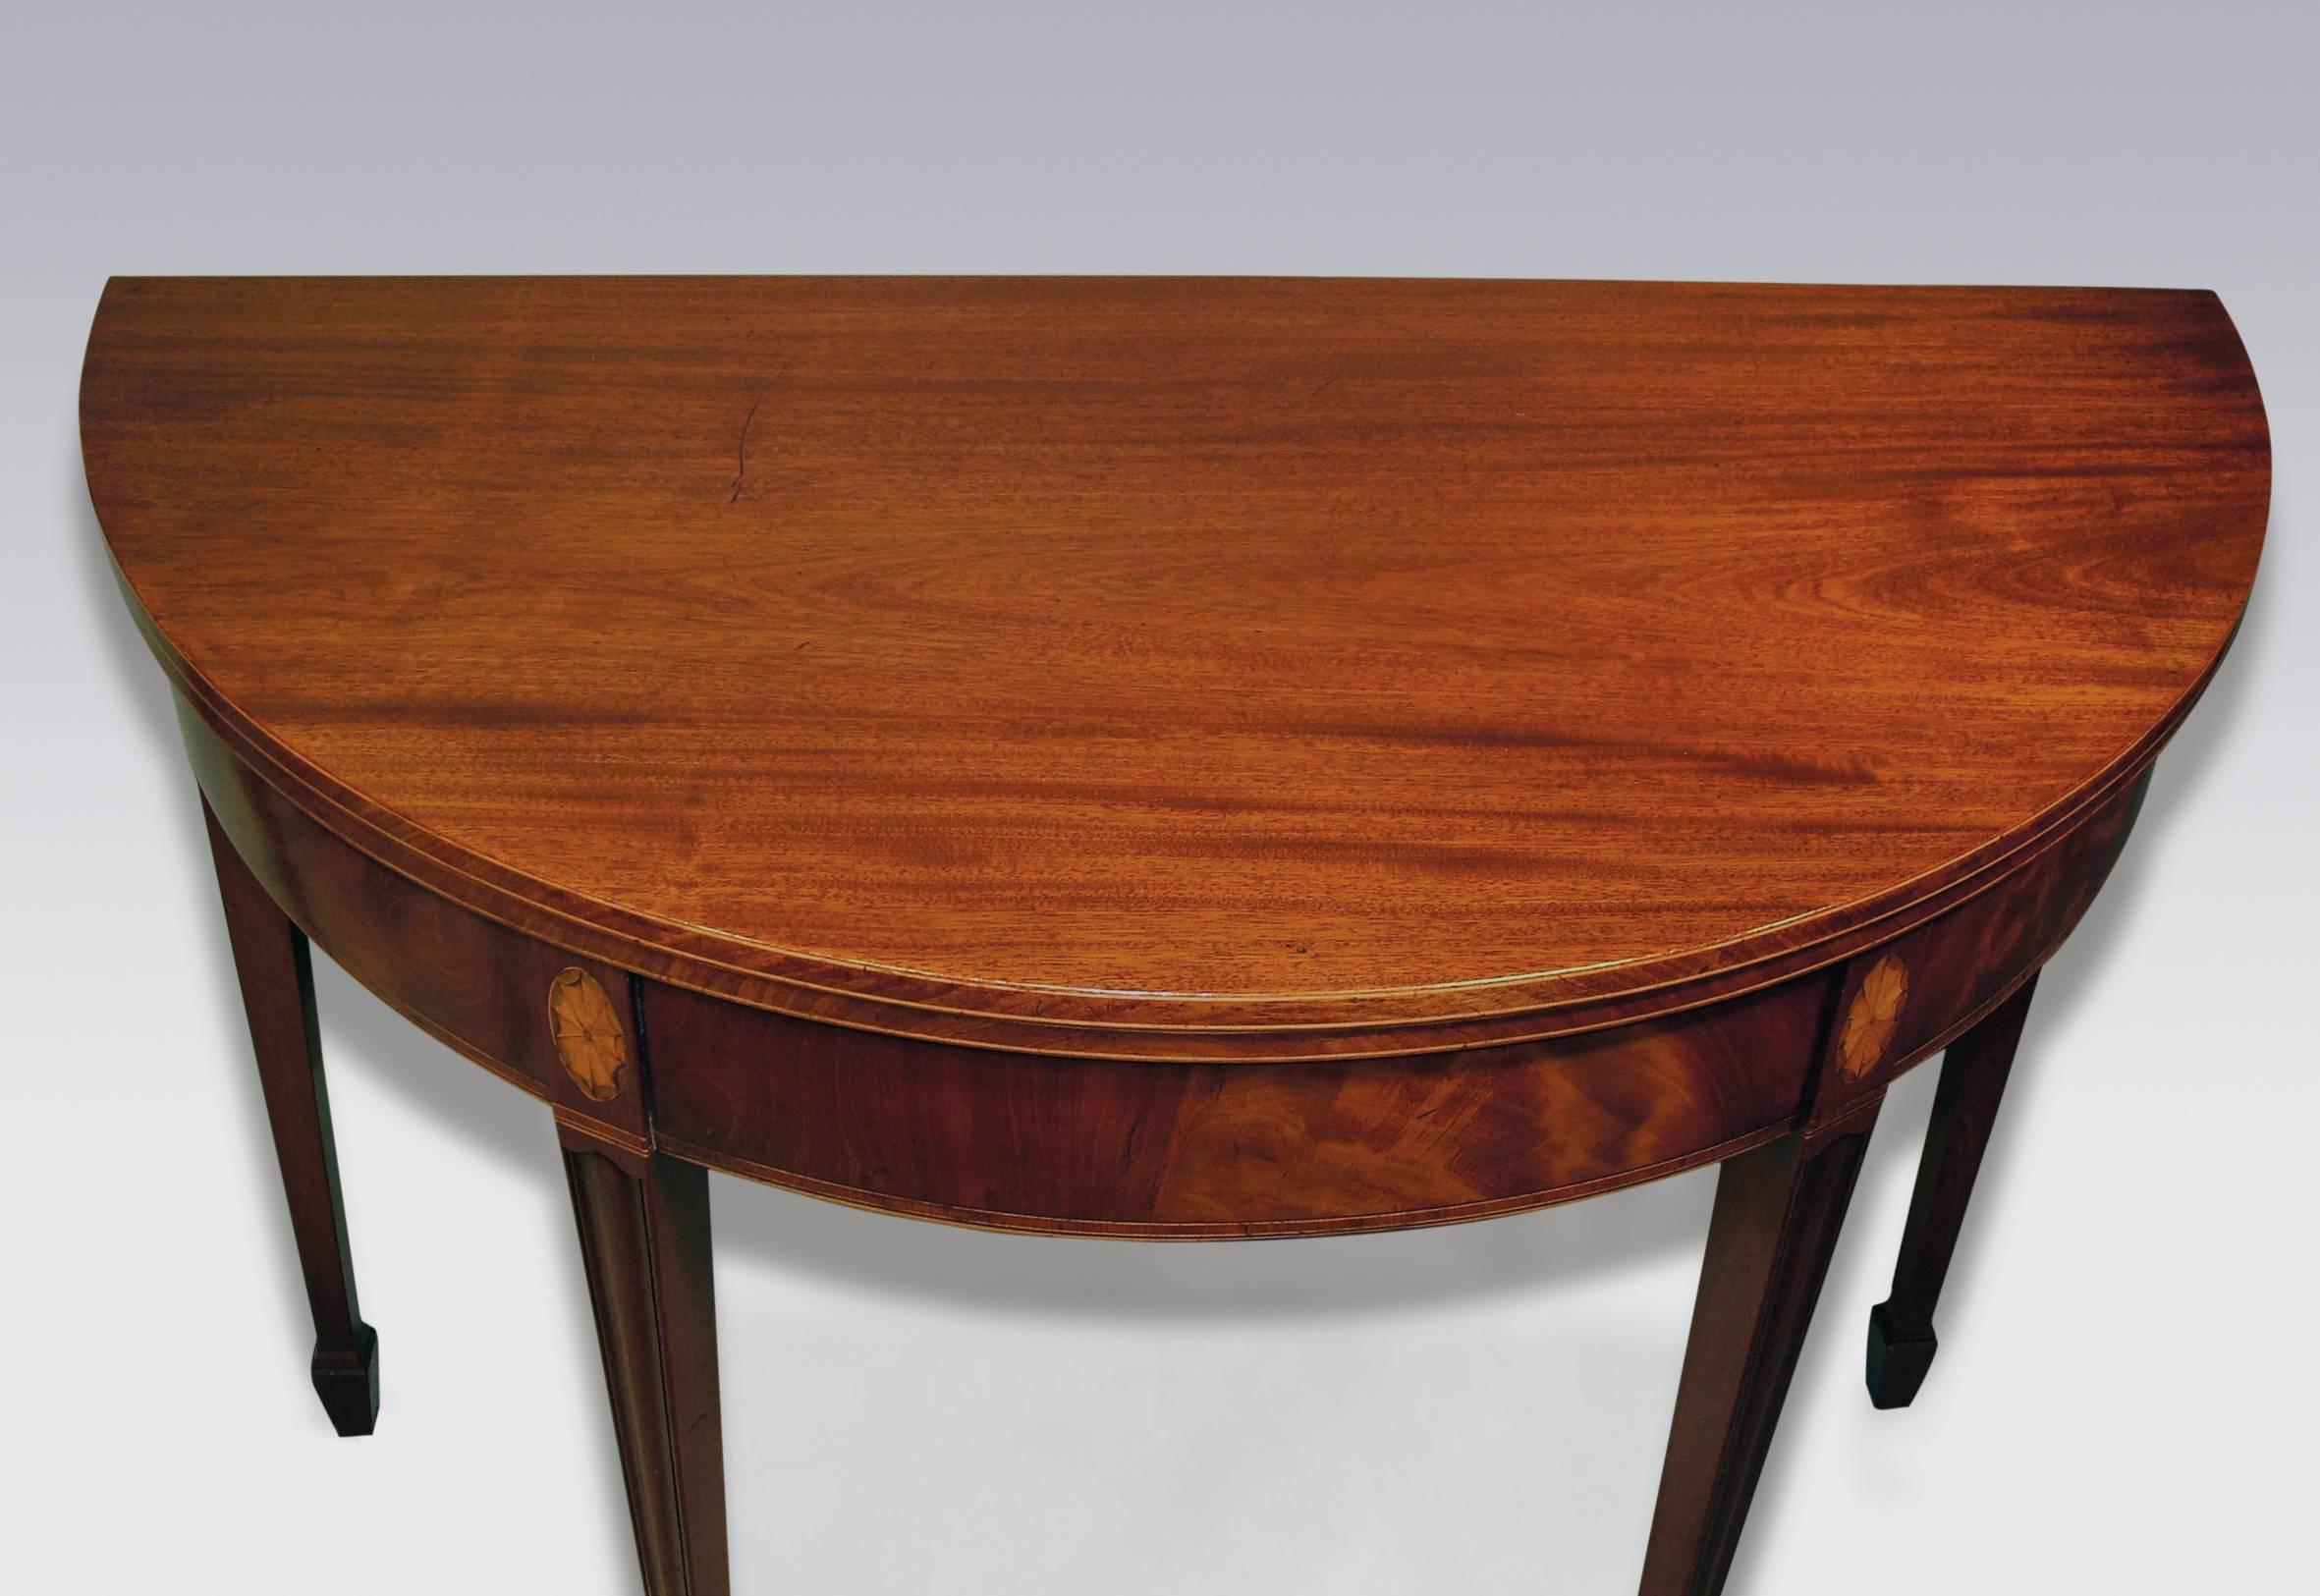 Sheraton 18th Century half-round mahogany tea tables